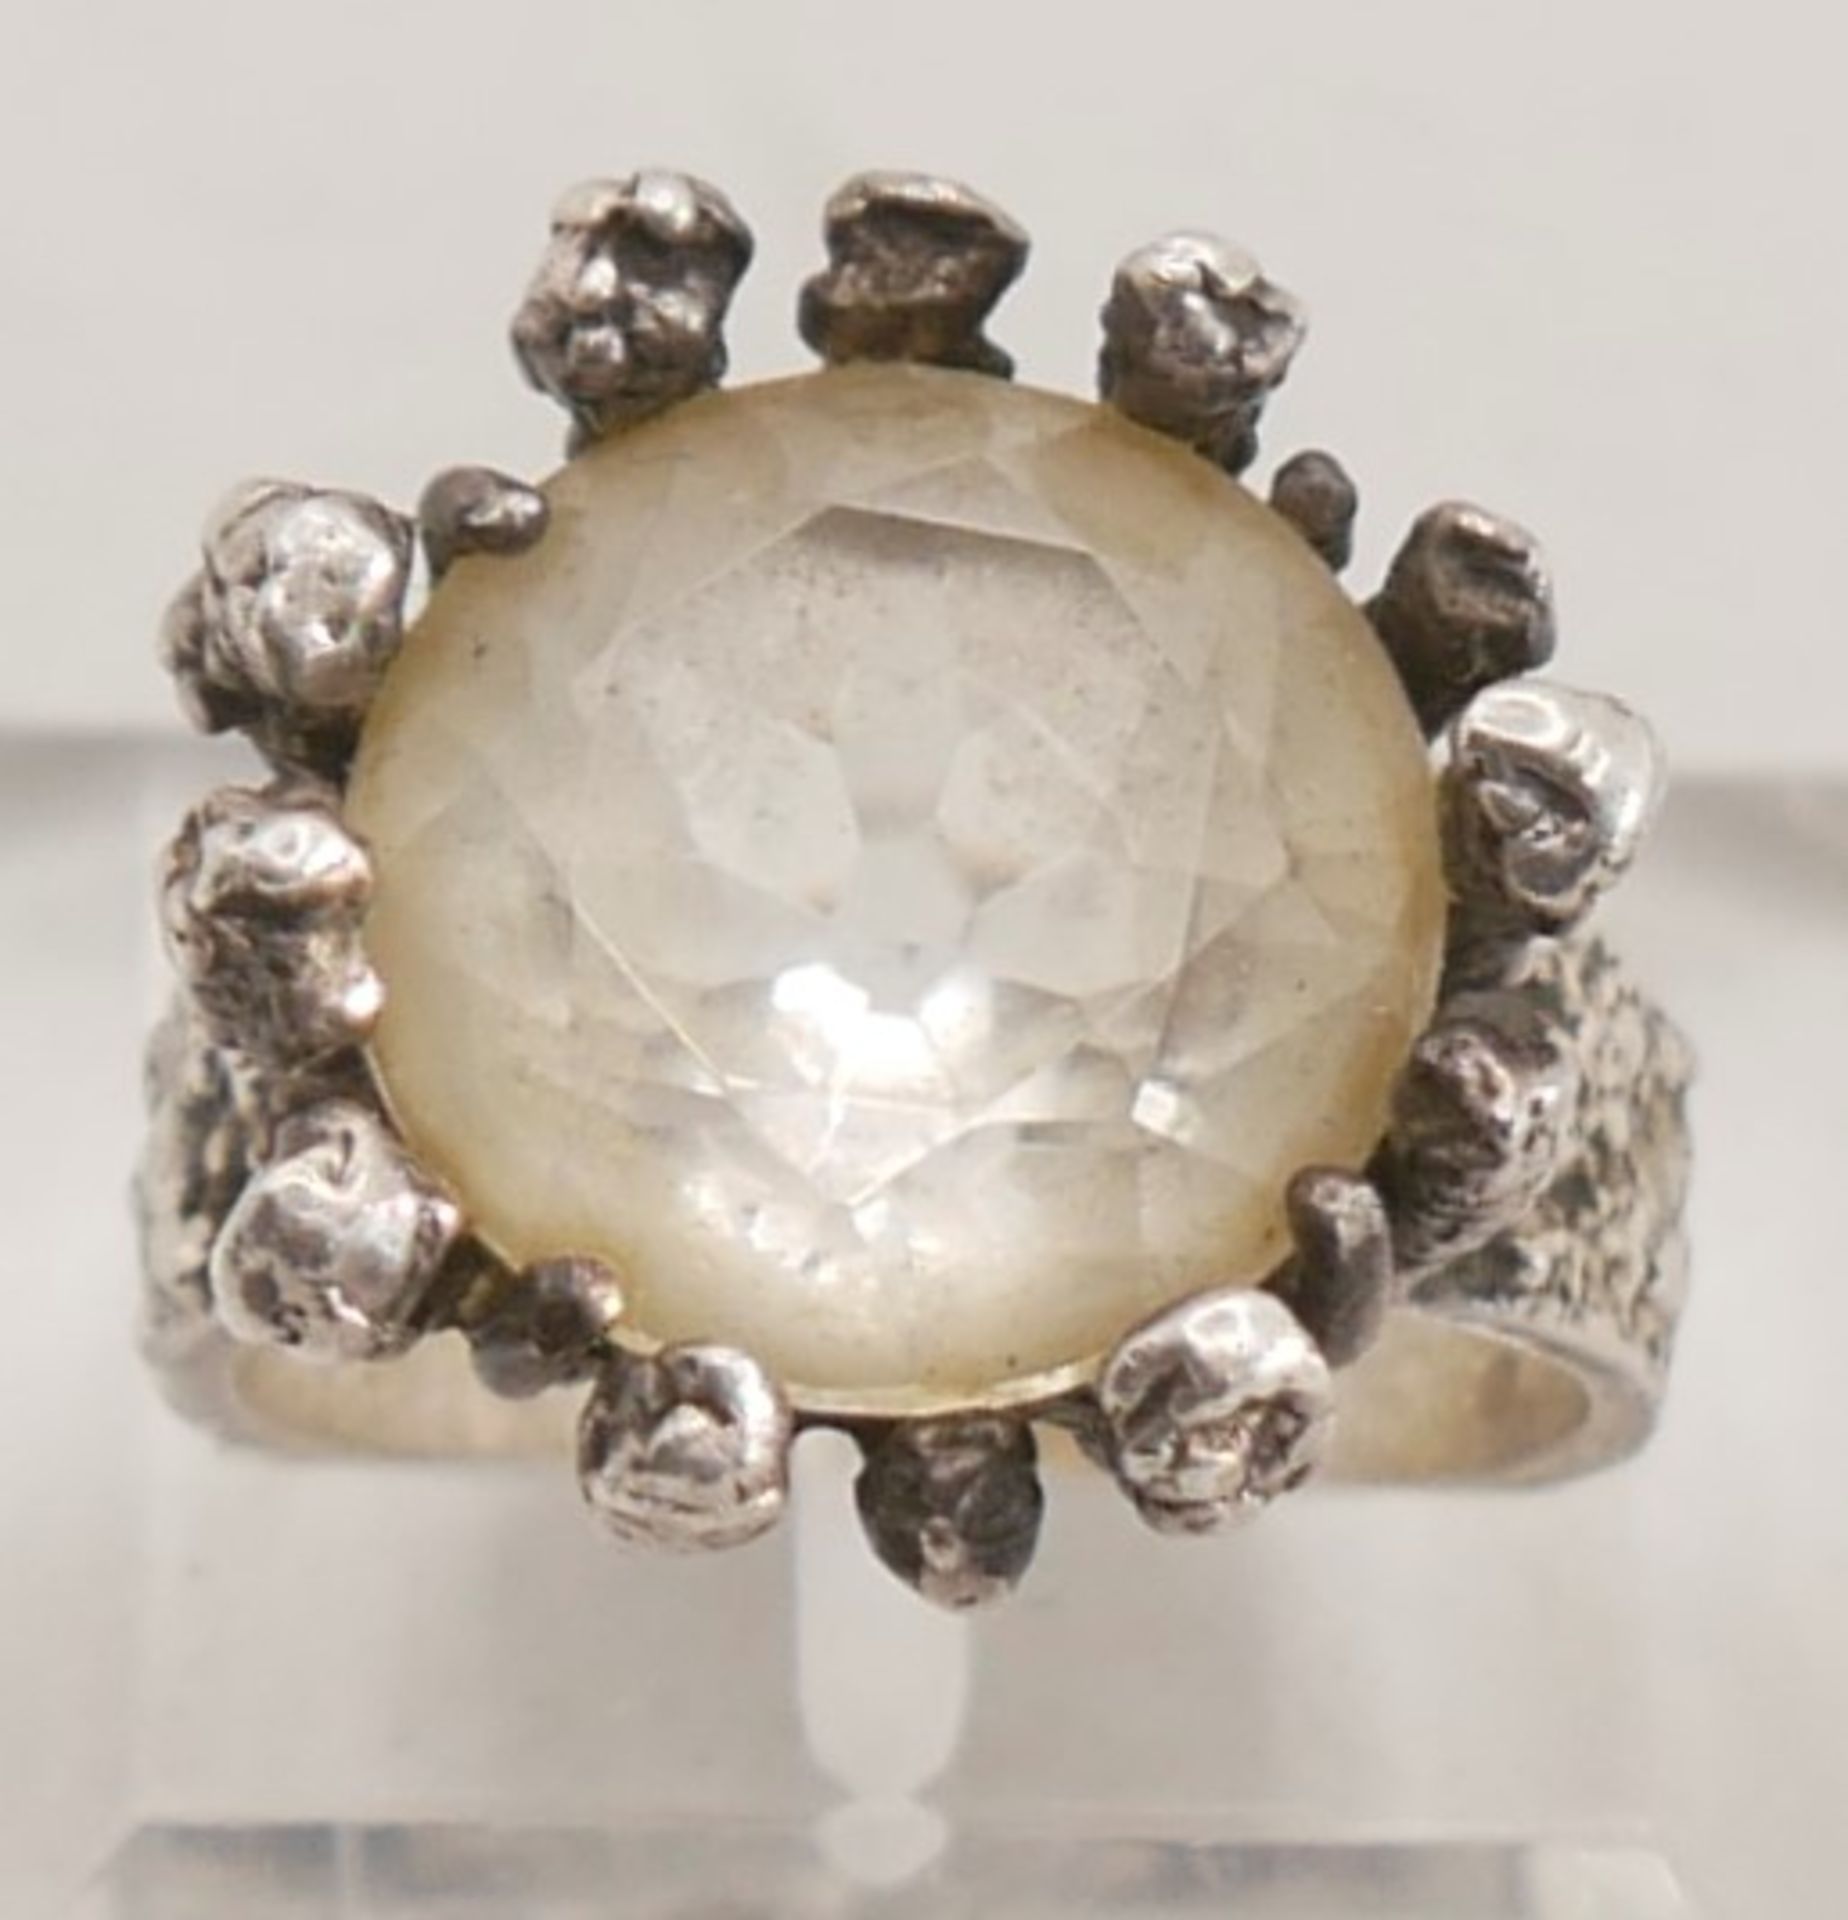 Damenring 925er Silber gepunzt, mit synthetischem Bergkristall, Ringgröße 52.